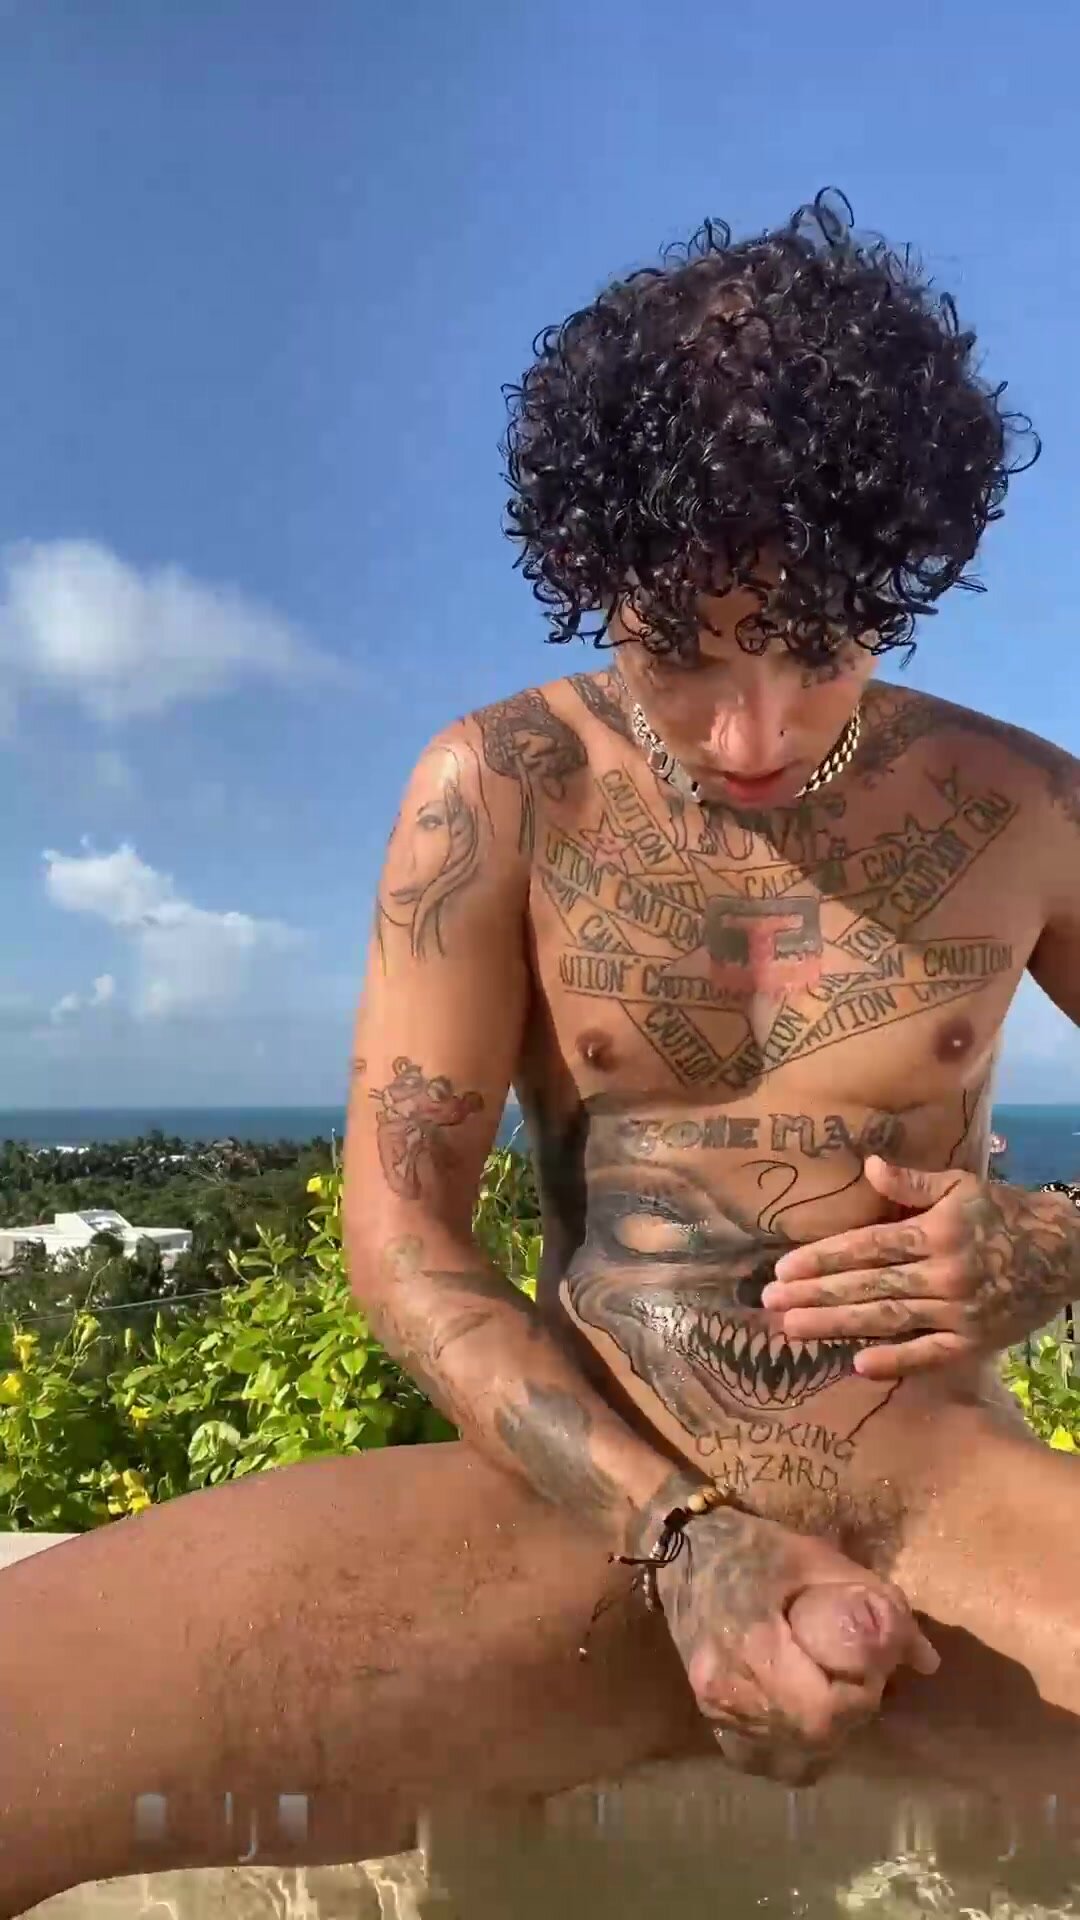 great tattoed boy cumming outside